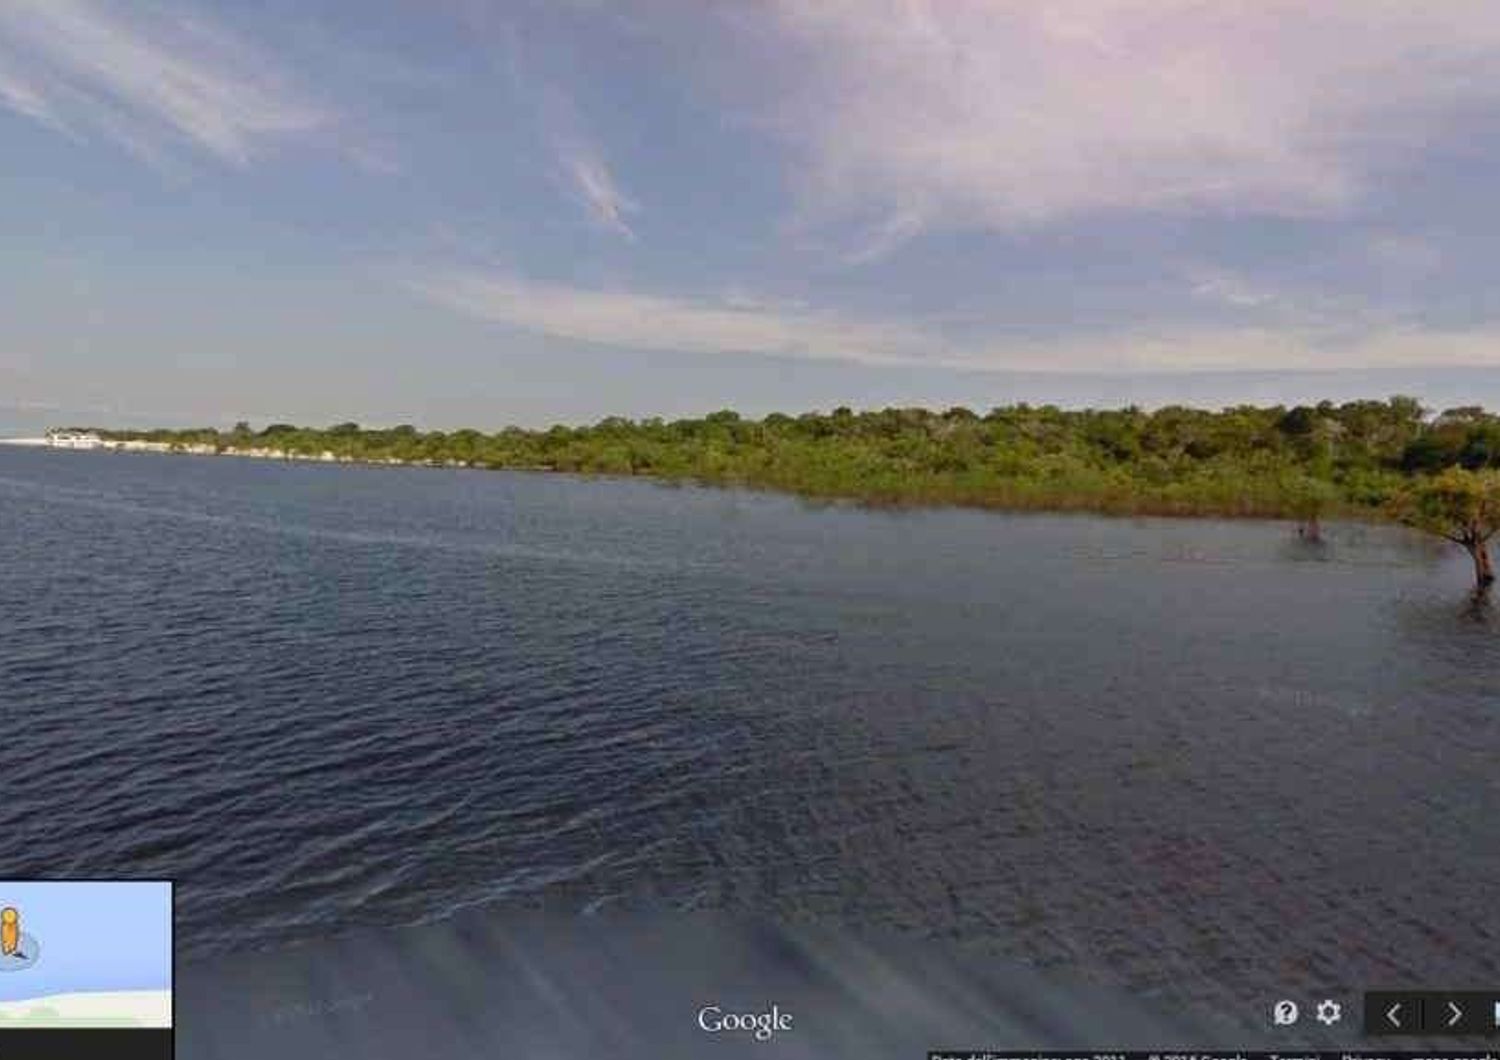 Google esplora l'Amazzonia con "Maps Street View" nella foresta